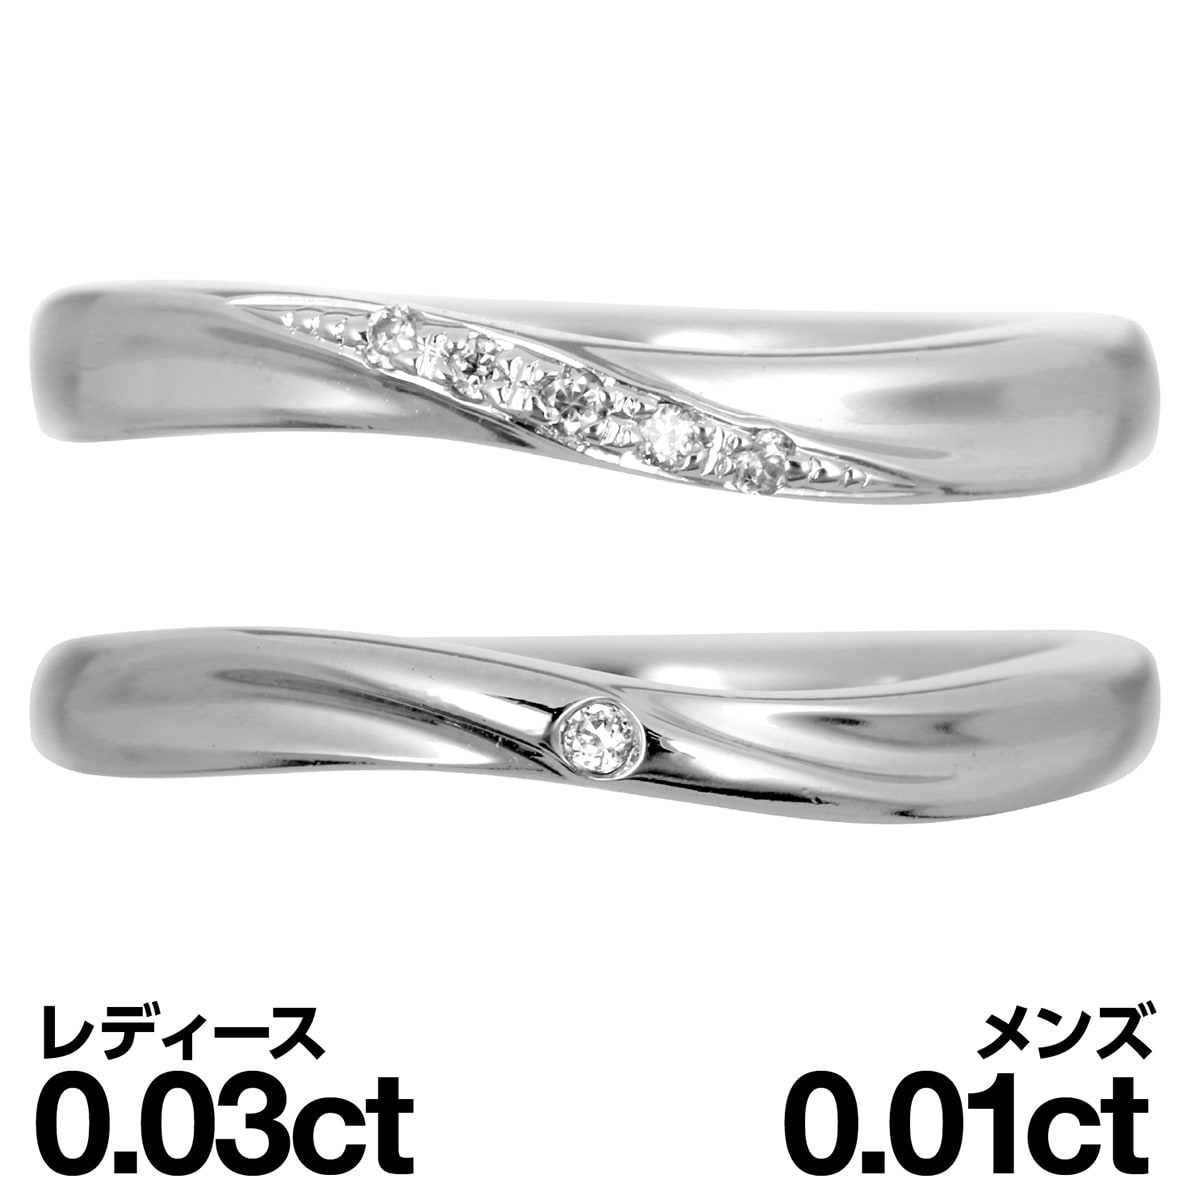 結婚指輪 マリッジリング シルバー925 シルバーリング ダイヤモンド 2本セット 天然ダイヤ 品質保証書 金属アレルギー 日本製 おしゃれ ジュエリー ギフト プレゼント